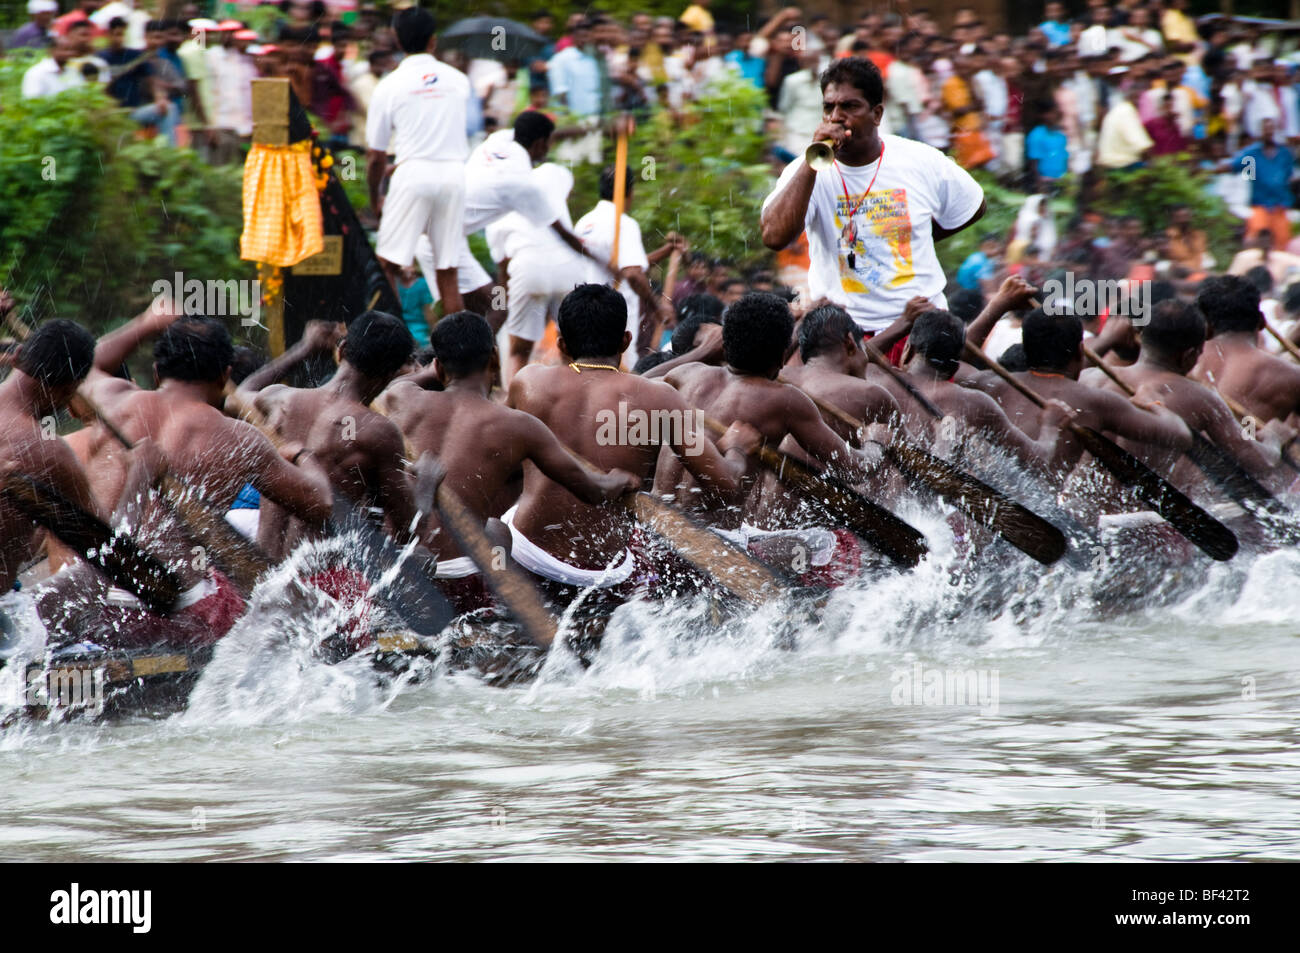 Snake Boat race during onam celebrations in Kerala, India Stock Photo